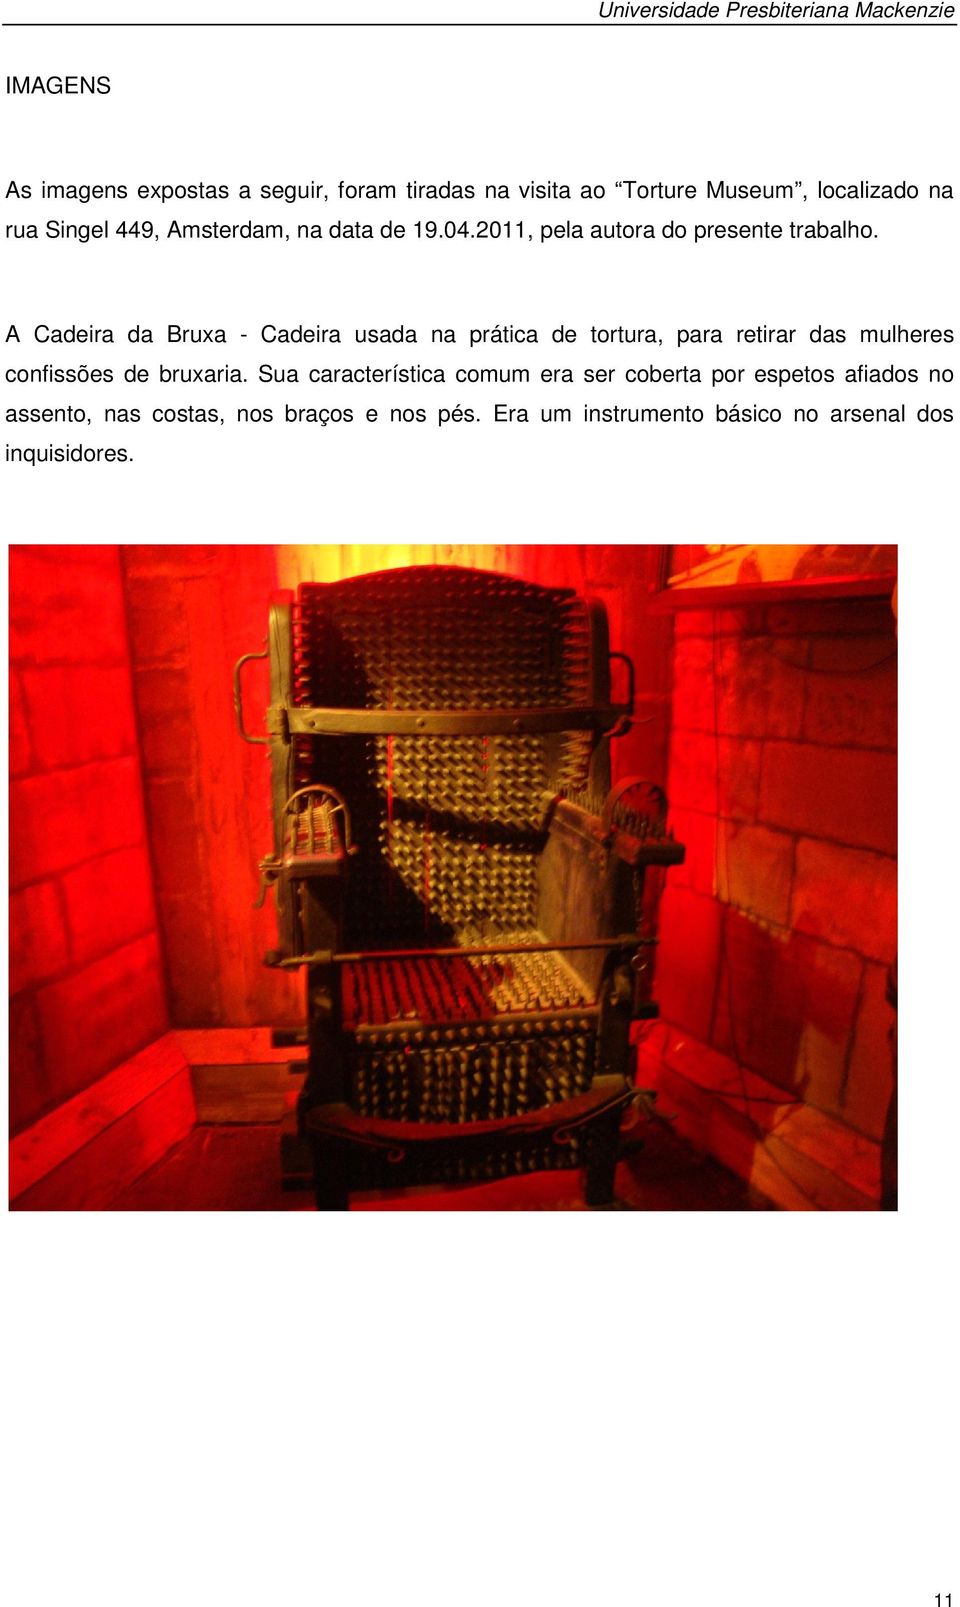 A Cadeira da Bruxa - Cadeira usada na prática de tortura, para retirar das mulheres confissões de bruxaria.